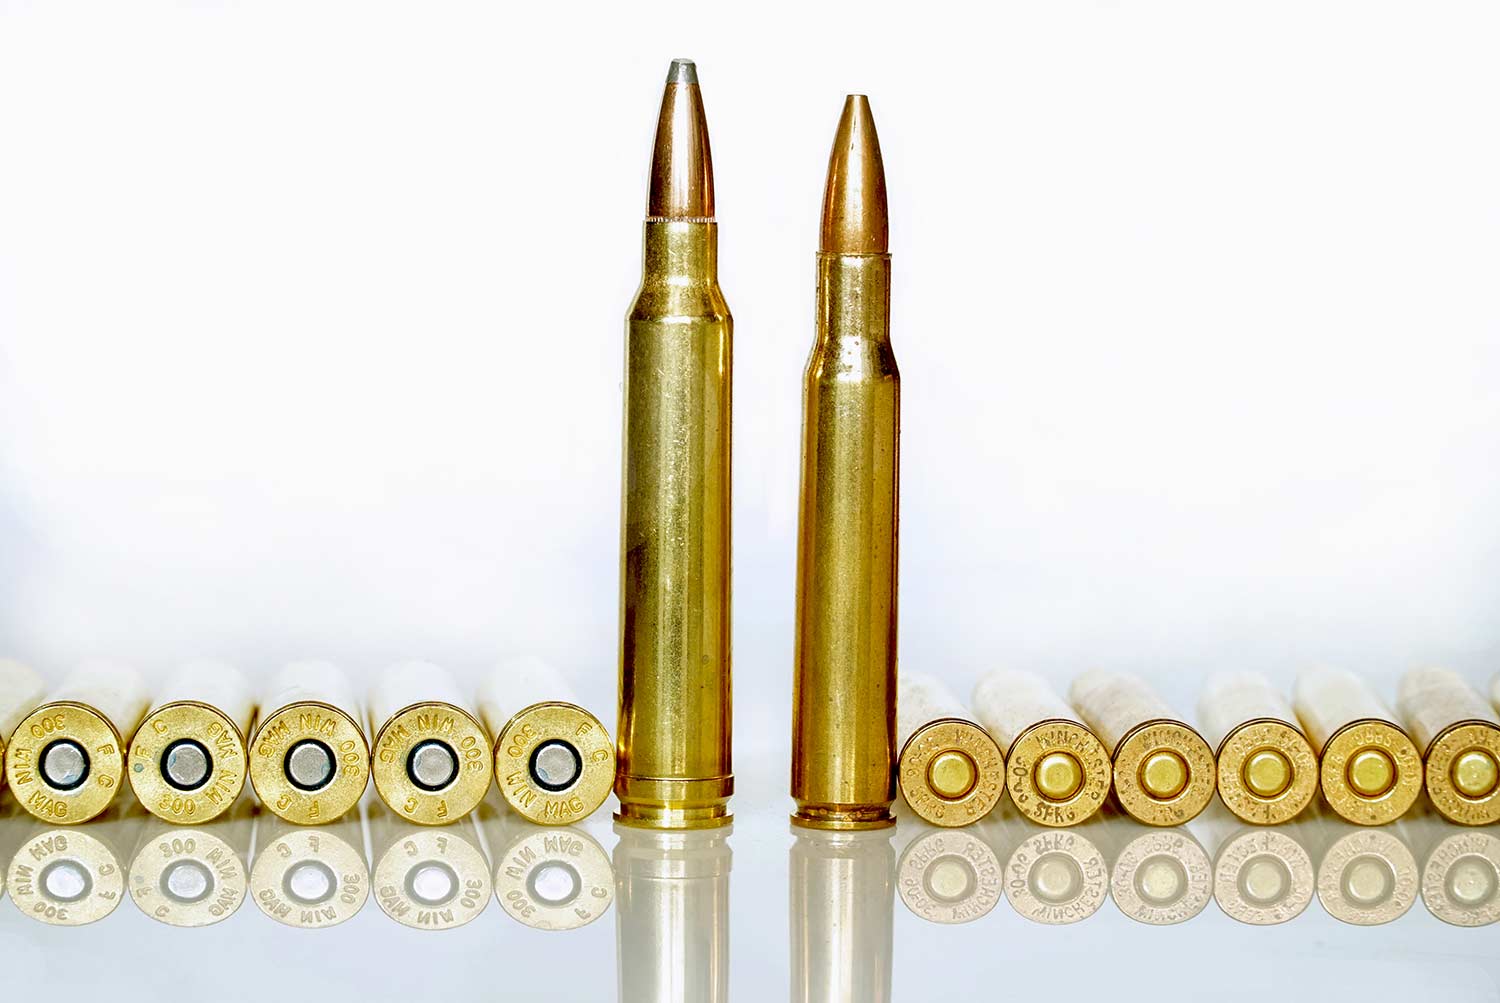 The .30/06 vs. the .300 Winchester Magnum Field & Stream